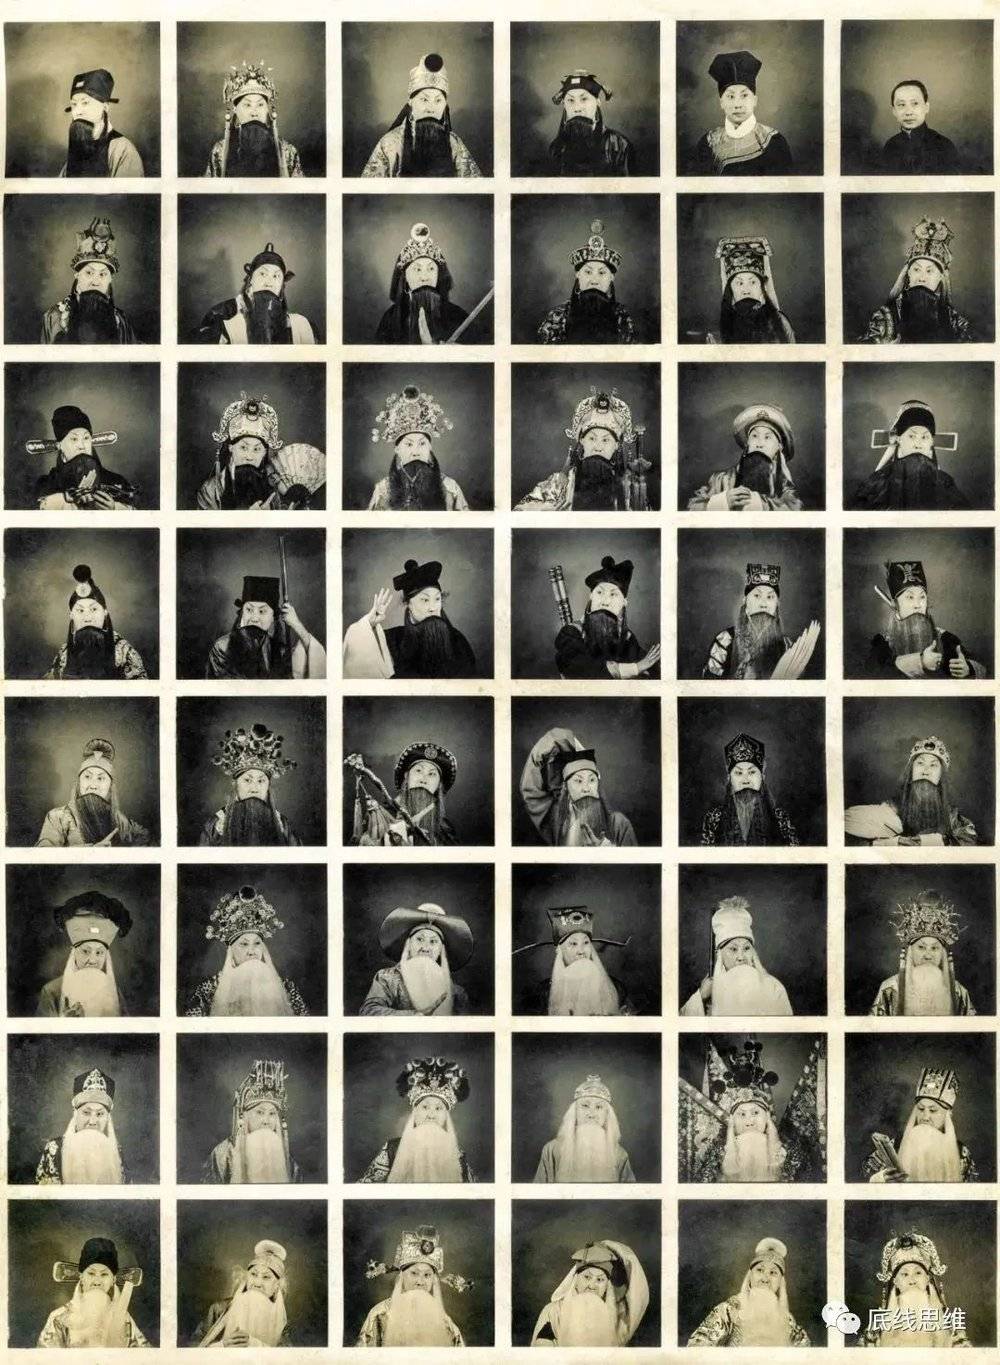 马连良·四十八我。这张照片是马连良先生1934年在静安寺附近一家照相馆拍下的照片，一张照片中集中了他塑造的47个舞台形象，右上角是他的本色照片。这有点像我们以前流行的大头贴和现在的九宫格照片，可见那时候的马先生也是一个很时尚的人。图/受访者供图<br>